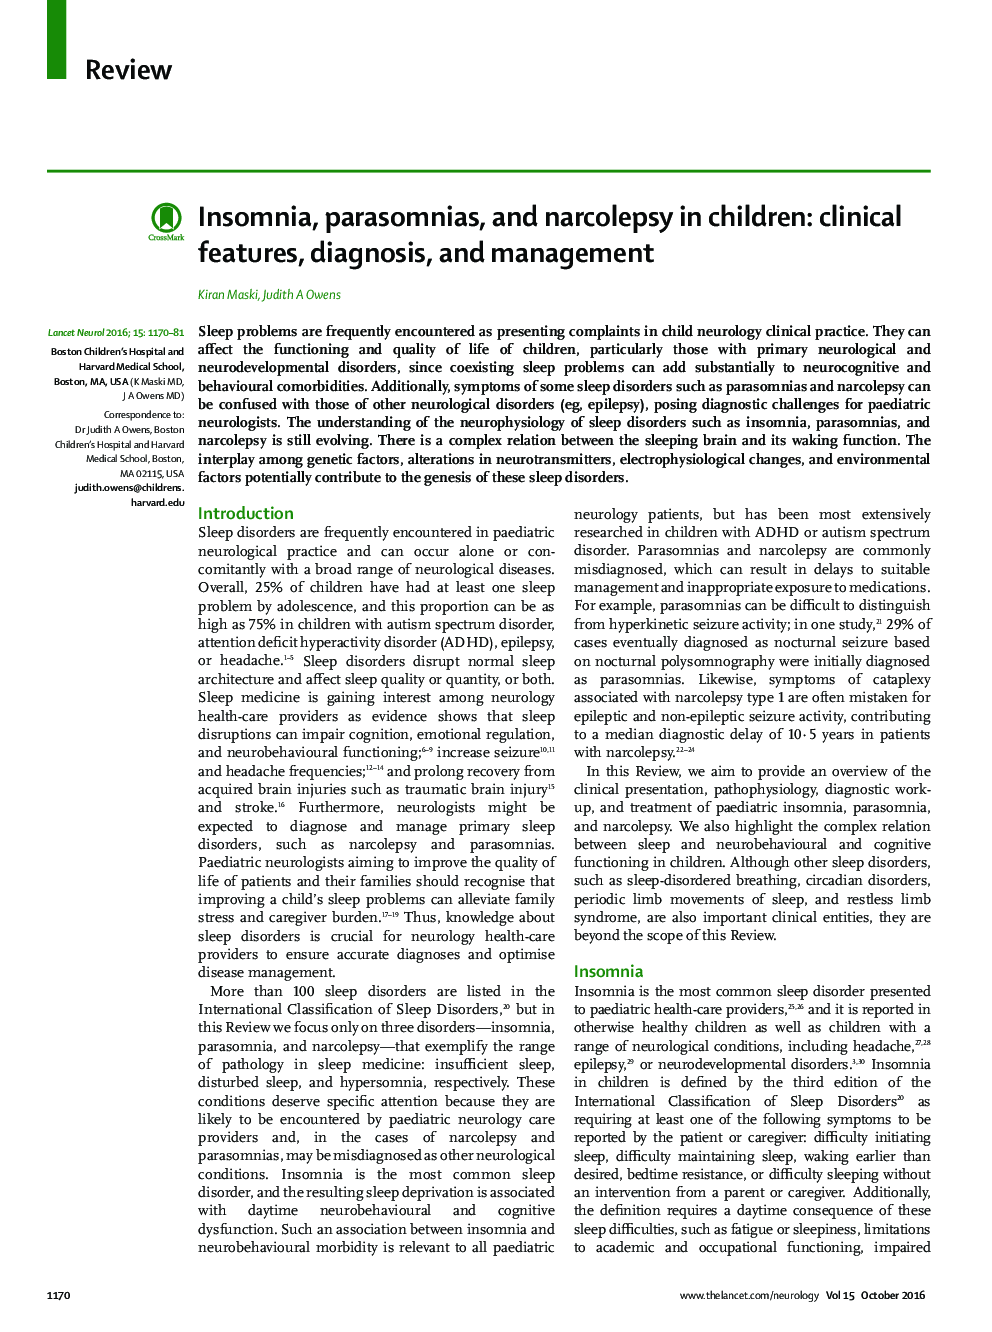 بی خوابی، پاراسومنی ها، و نارکولپسی در کودکان: ویژگی های بالینی، تشخیص و مدیریت 